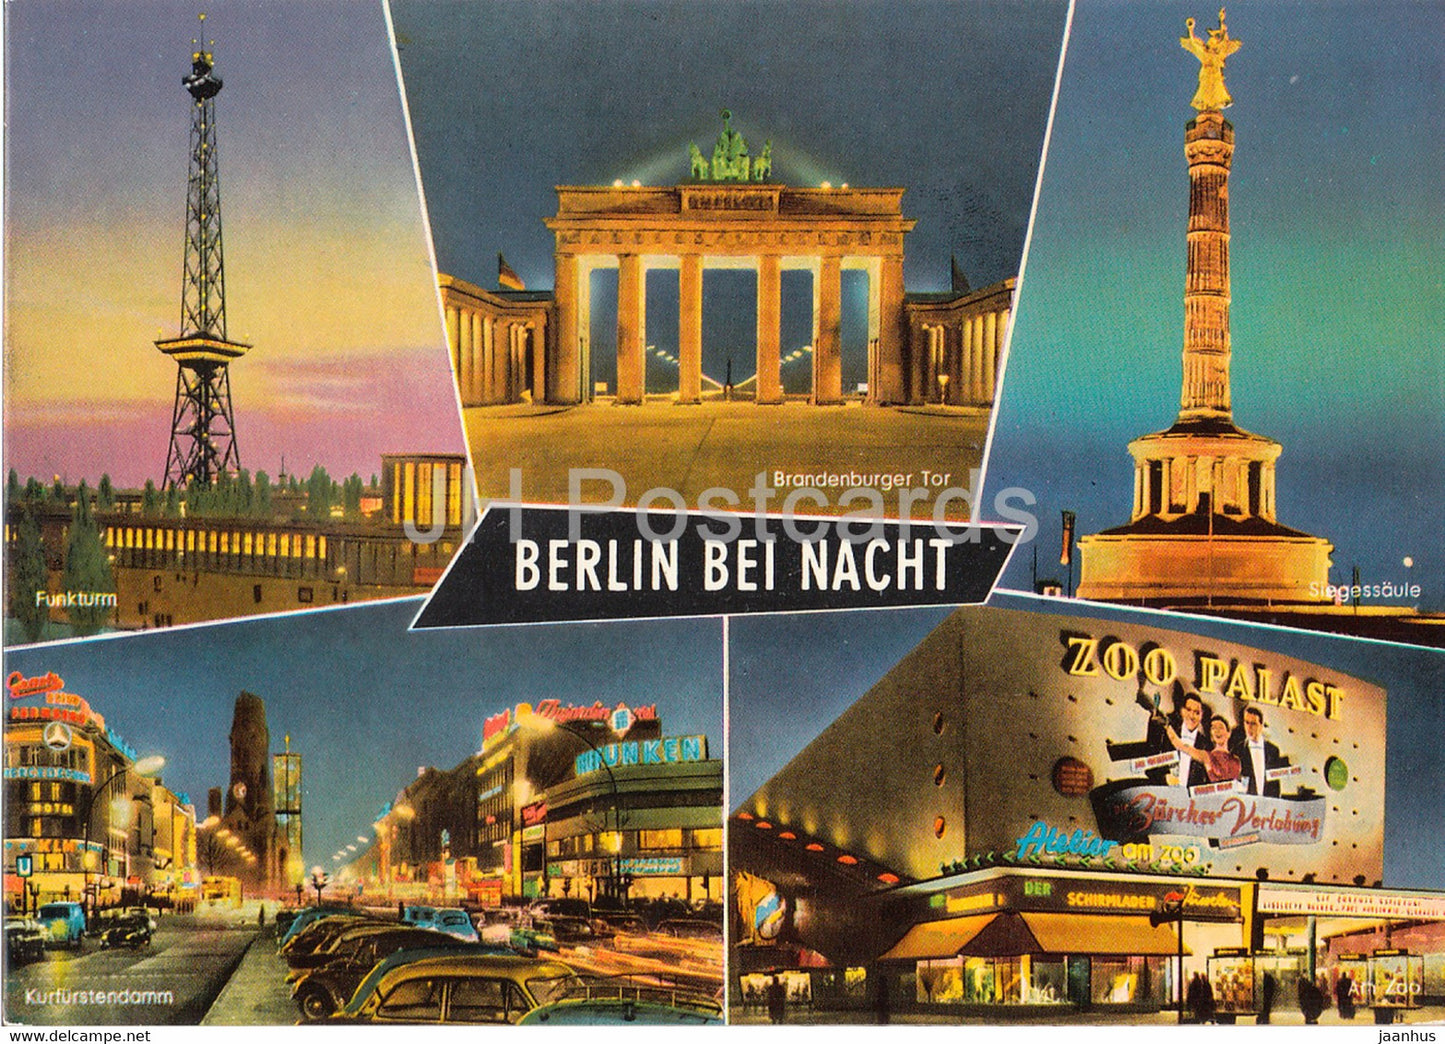 Berlin bei Nacht - Funkturm - Branderburger Tor - Siegessaule - Am Zoo - Germany - unused - JH Postcards